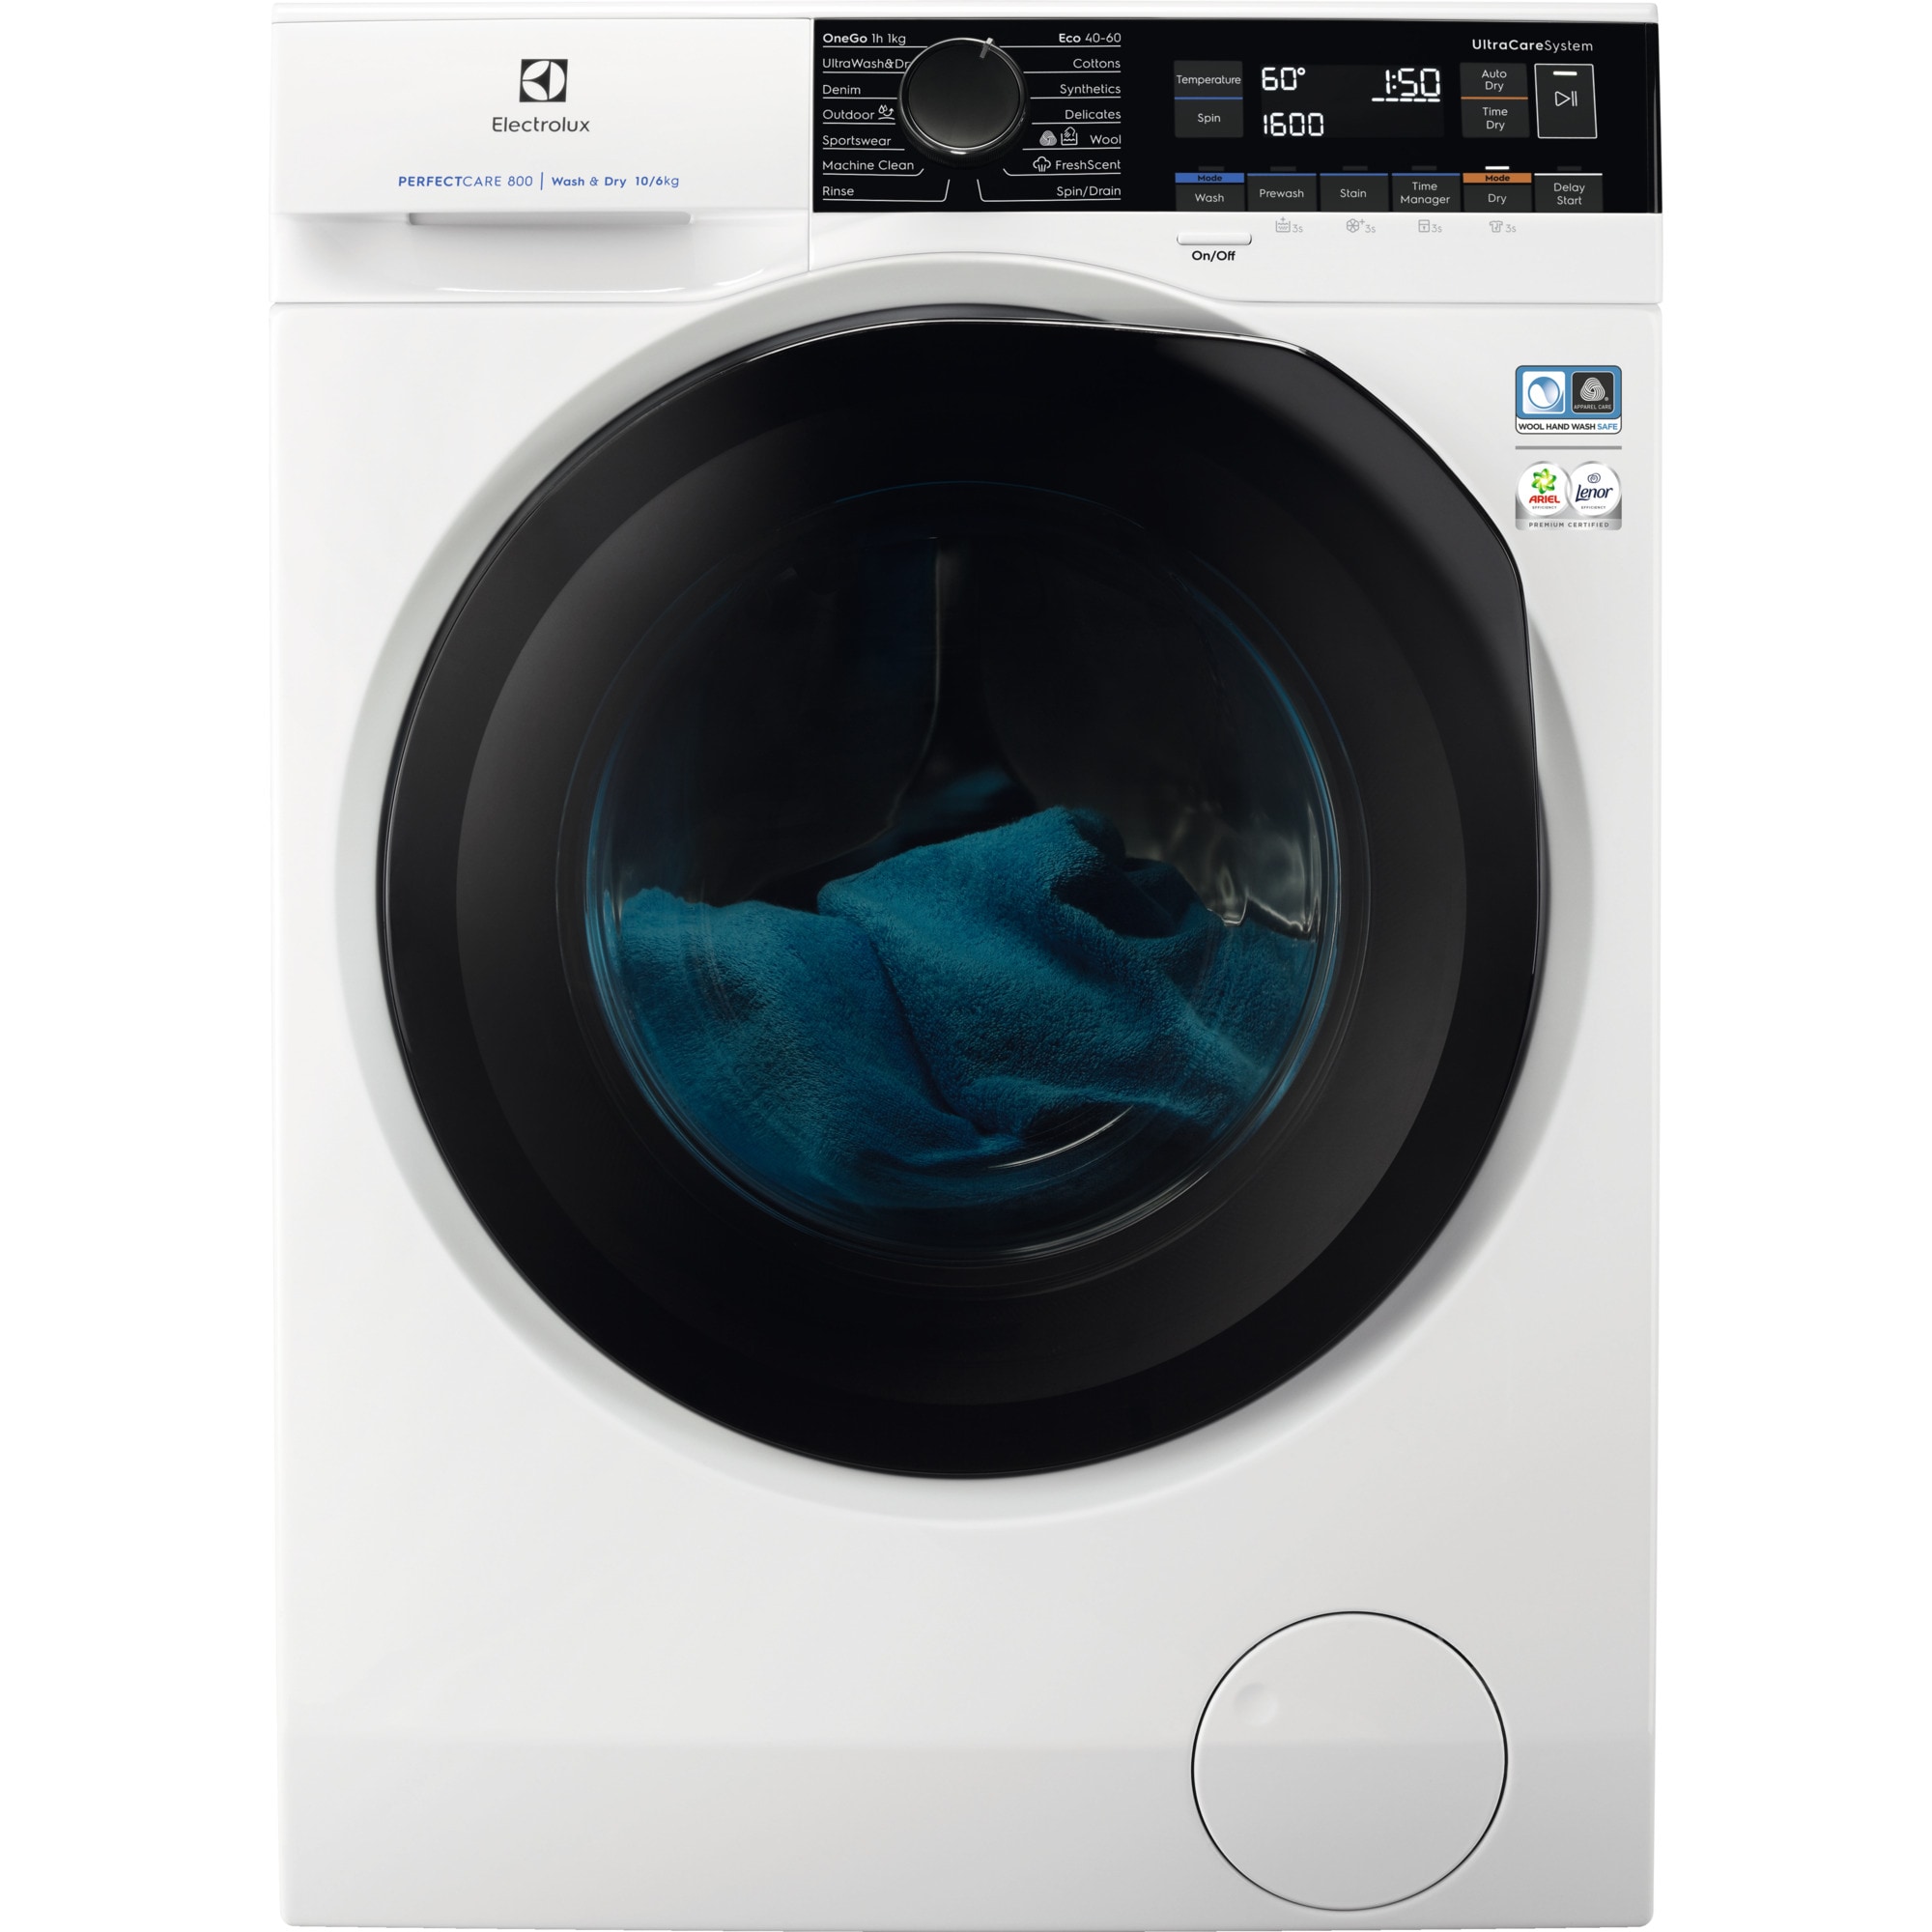 Bedste Electrolux Vaskemaskine med tørretumbler i 2023